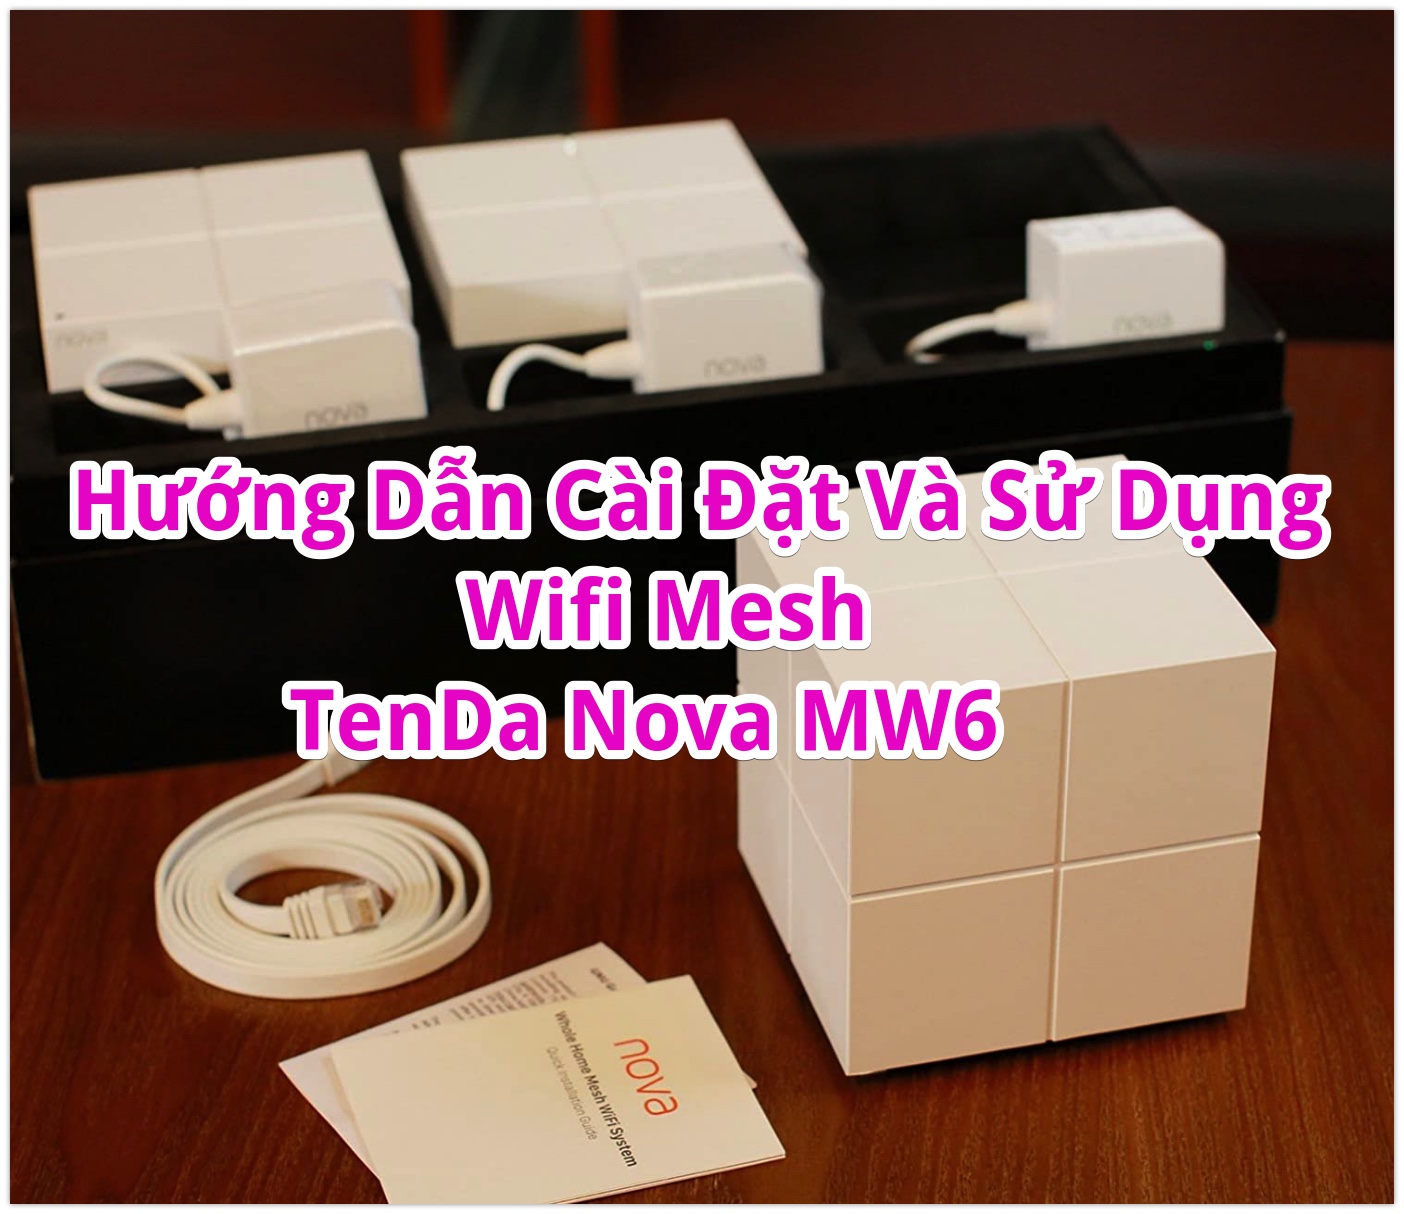 Hướng Dẫn Cài Đặt Và Sử Dụng Bộ Phát Wifi Mesh Tenda Nova MW6 Và Tenda Nova MW3